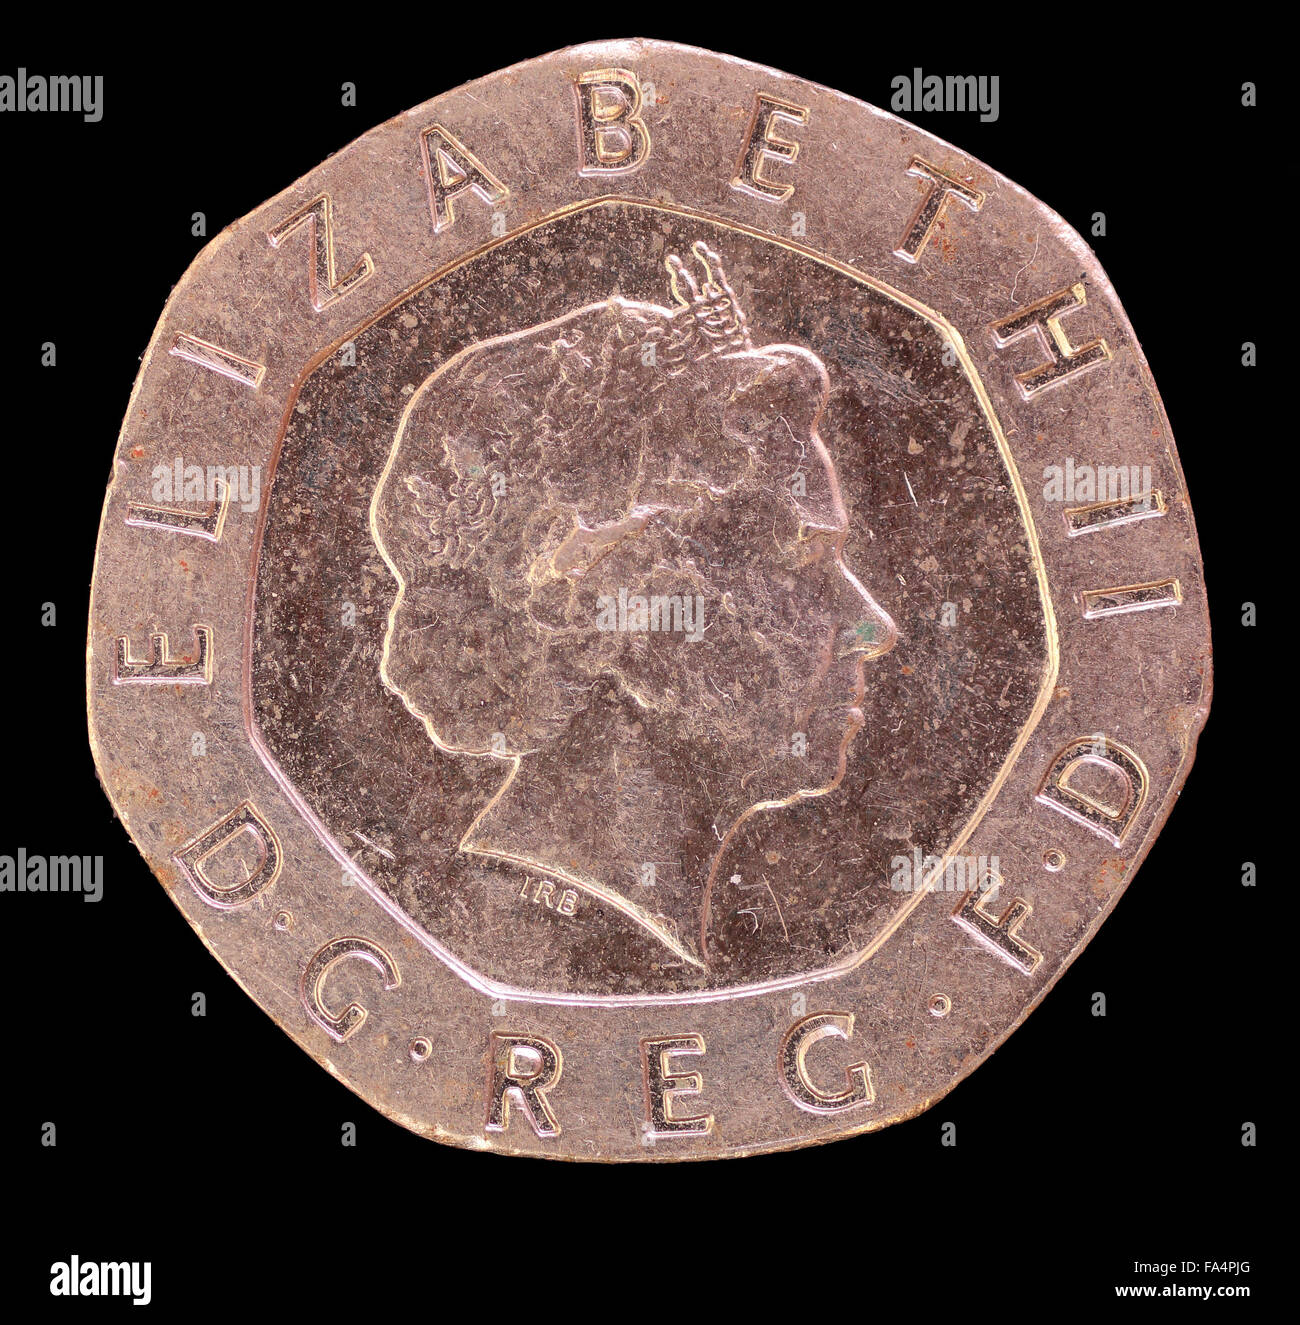 La face de vingt pence coins, émis par le Royaume-Uni en 2006, représentant le portrait de la reine Elizabeth. Isolées de l'image Banque D'Images